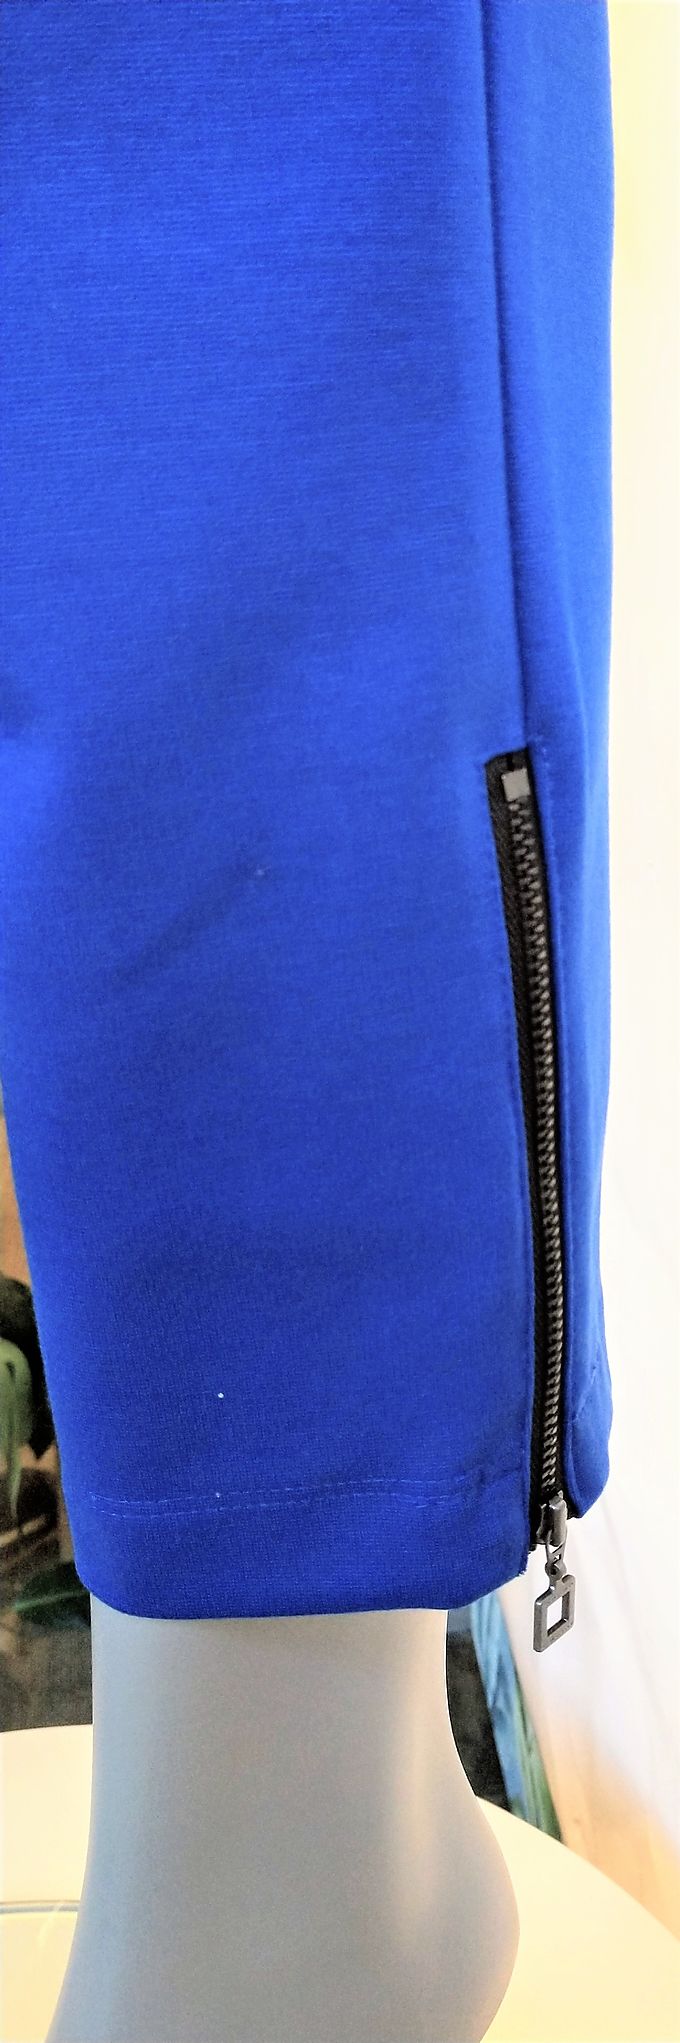 Pantalones Sarah Pacini azul, cremallera